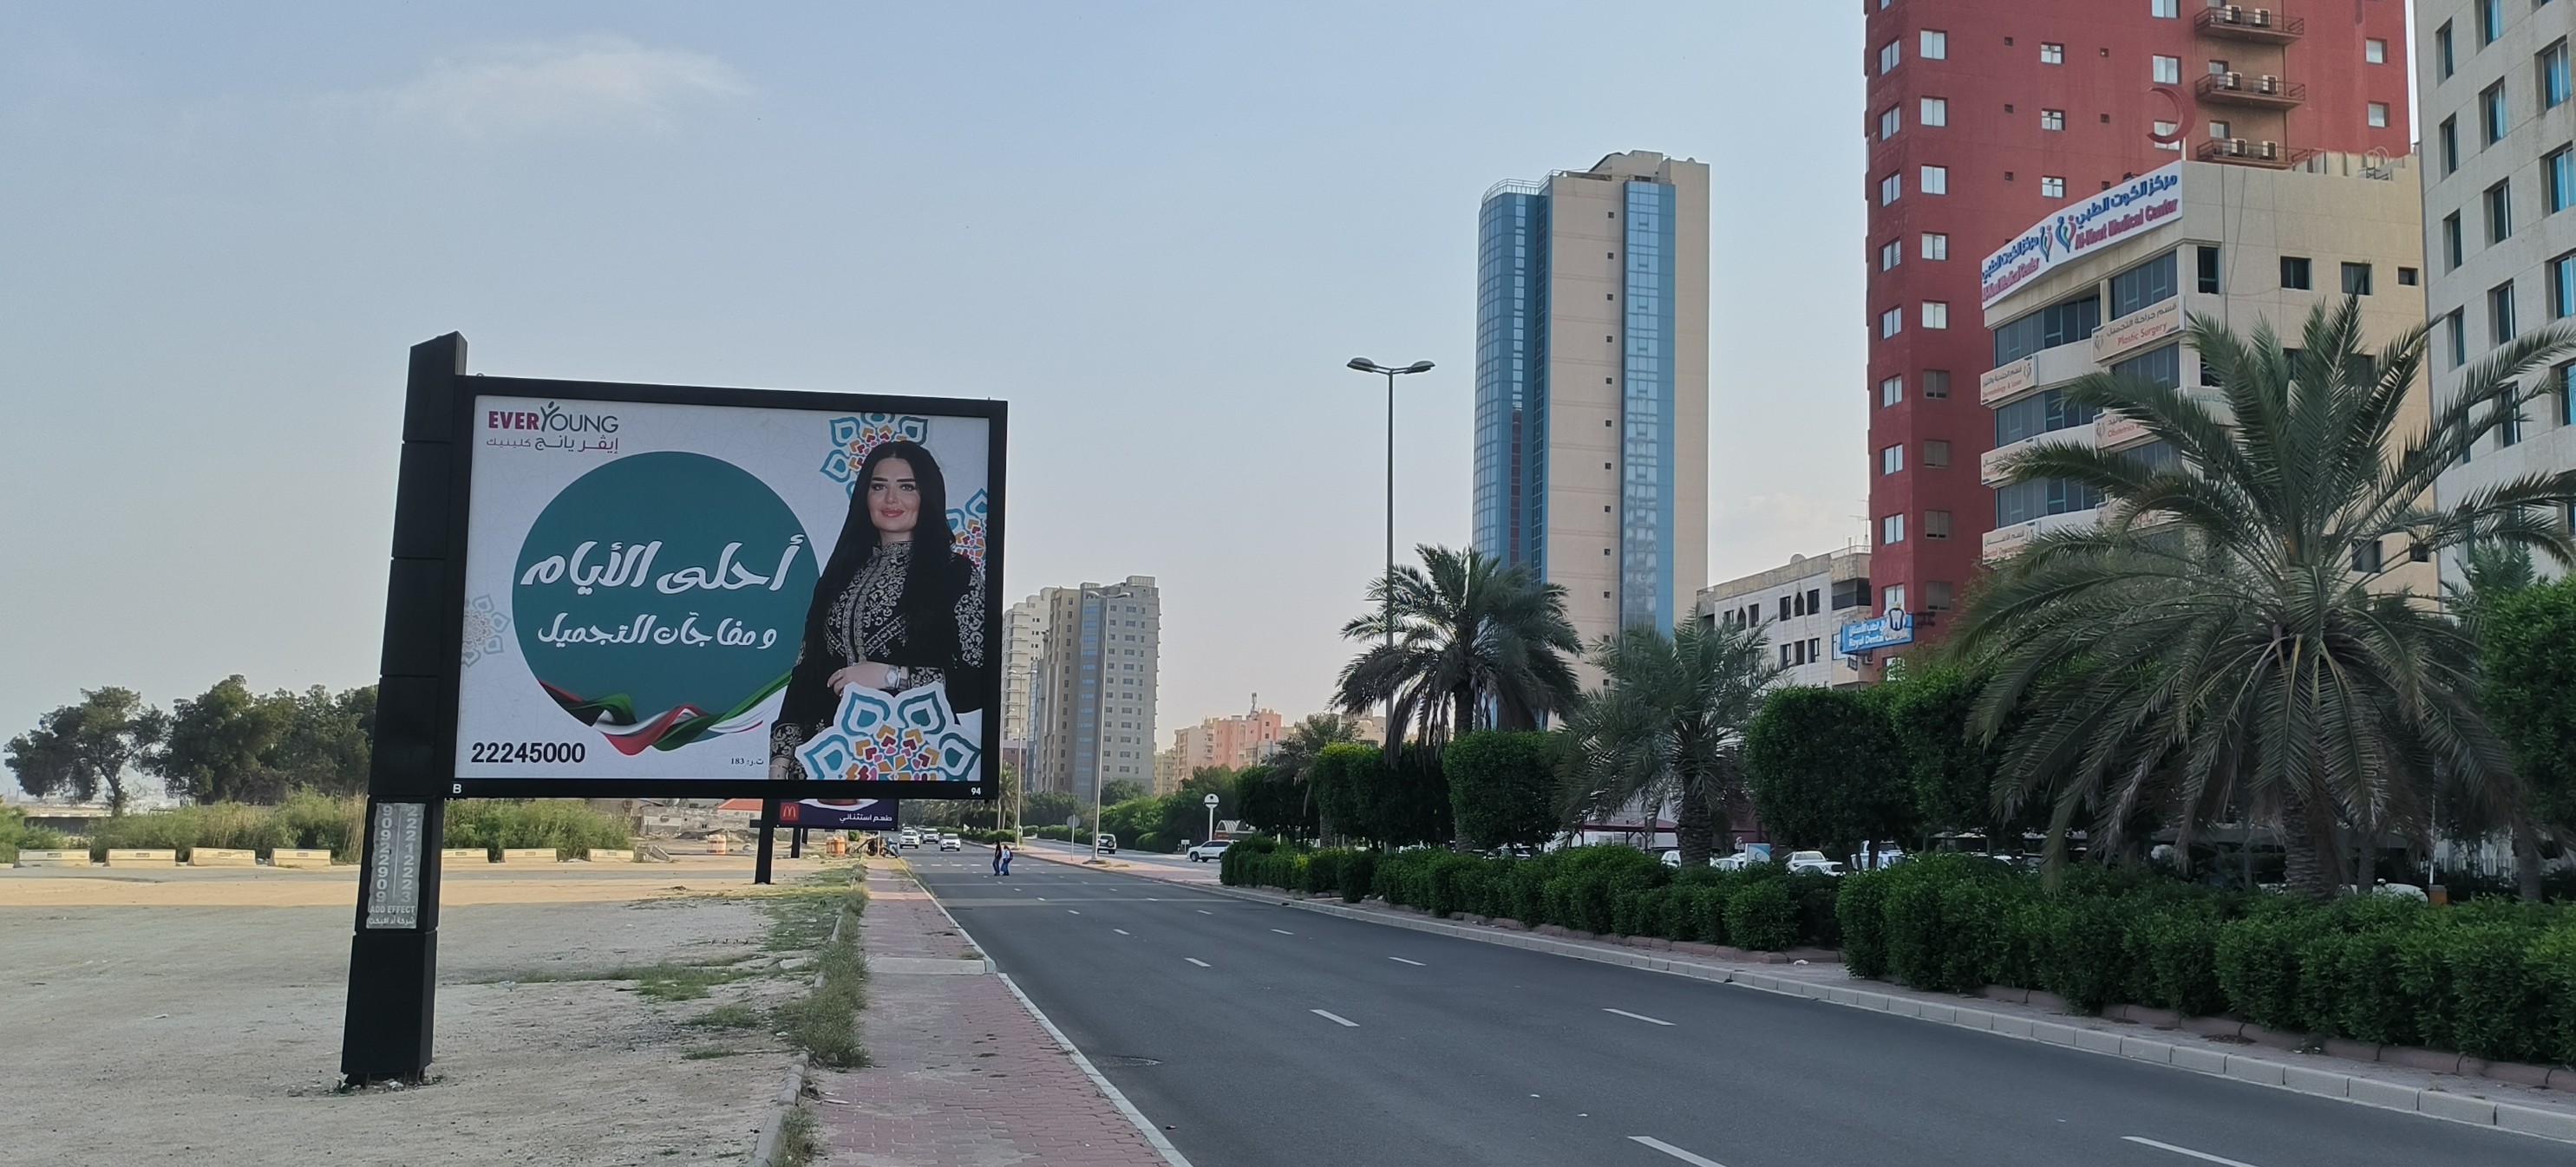 科威特曼卡夫，哈法希尔区域，是个商业区，各国劳工集中居住在此地。商业繁华，是不错的旅游地。